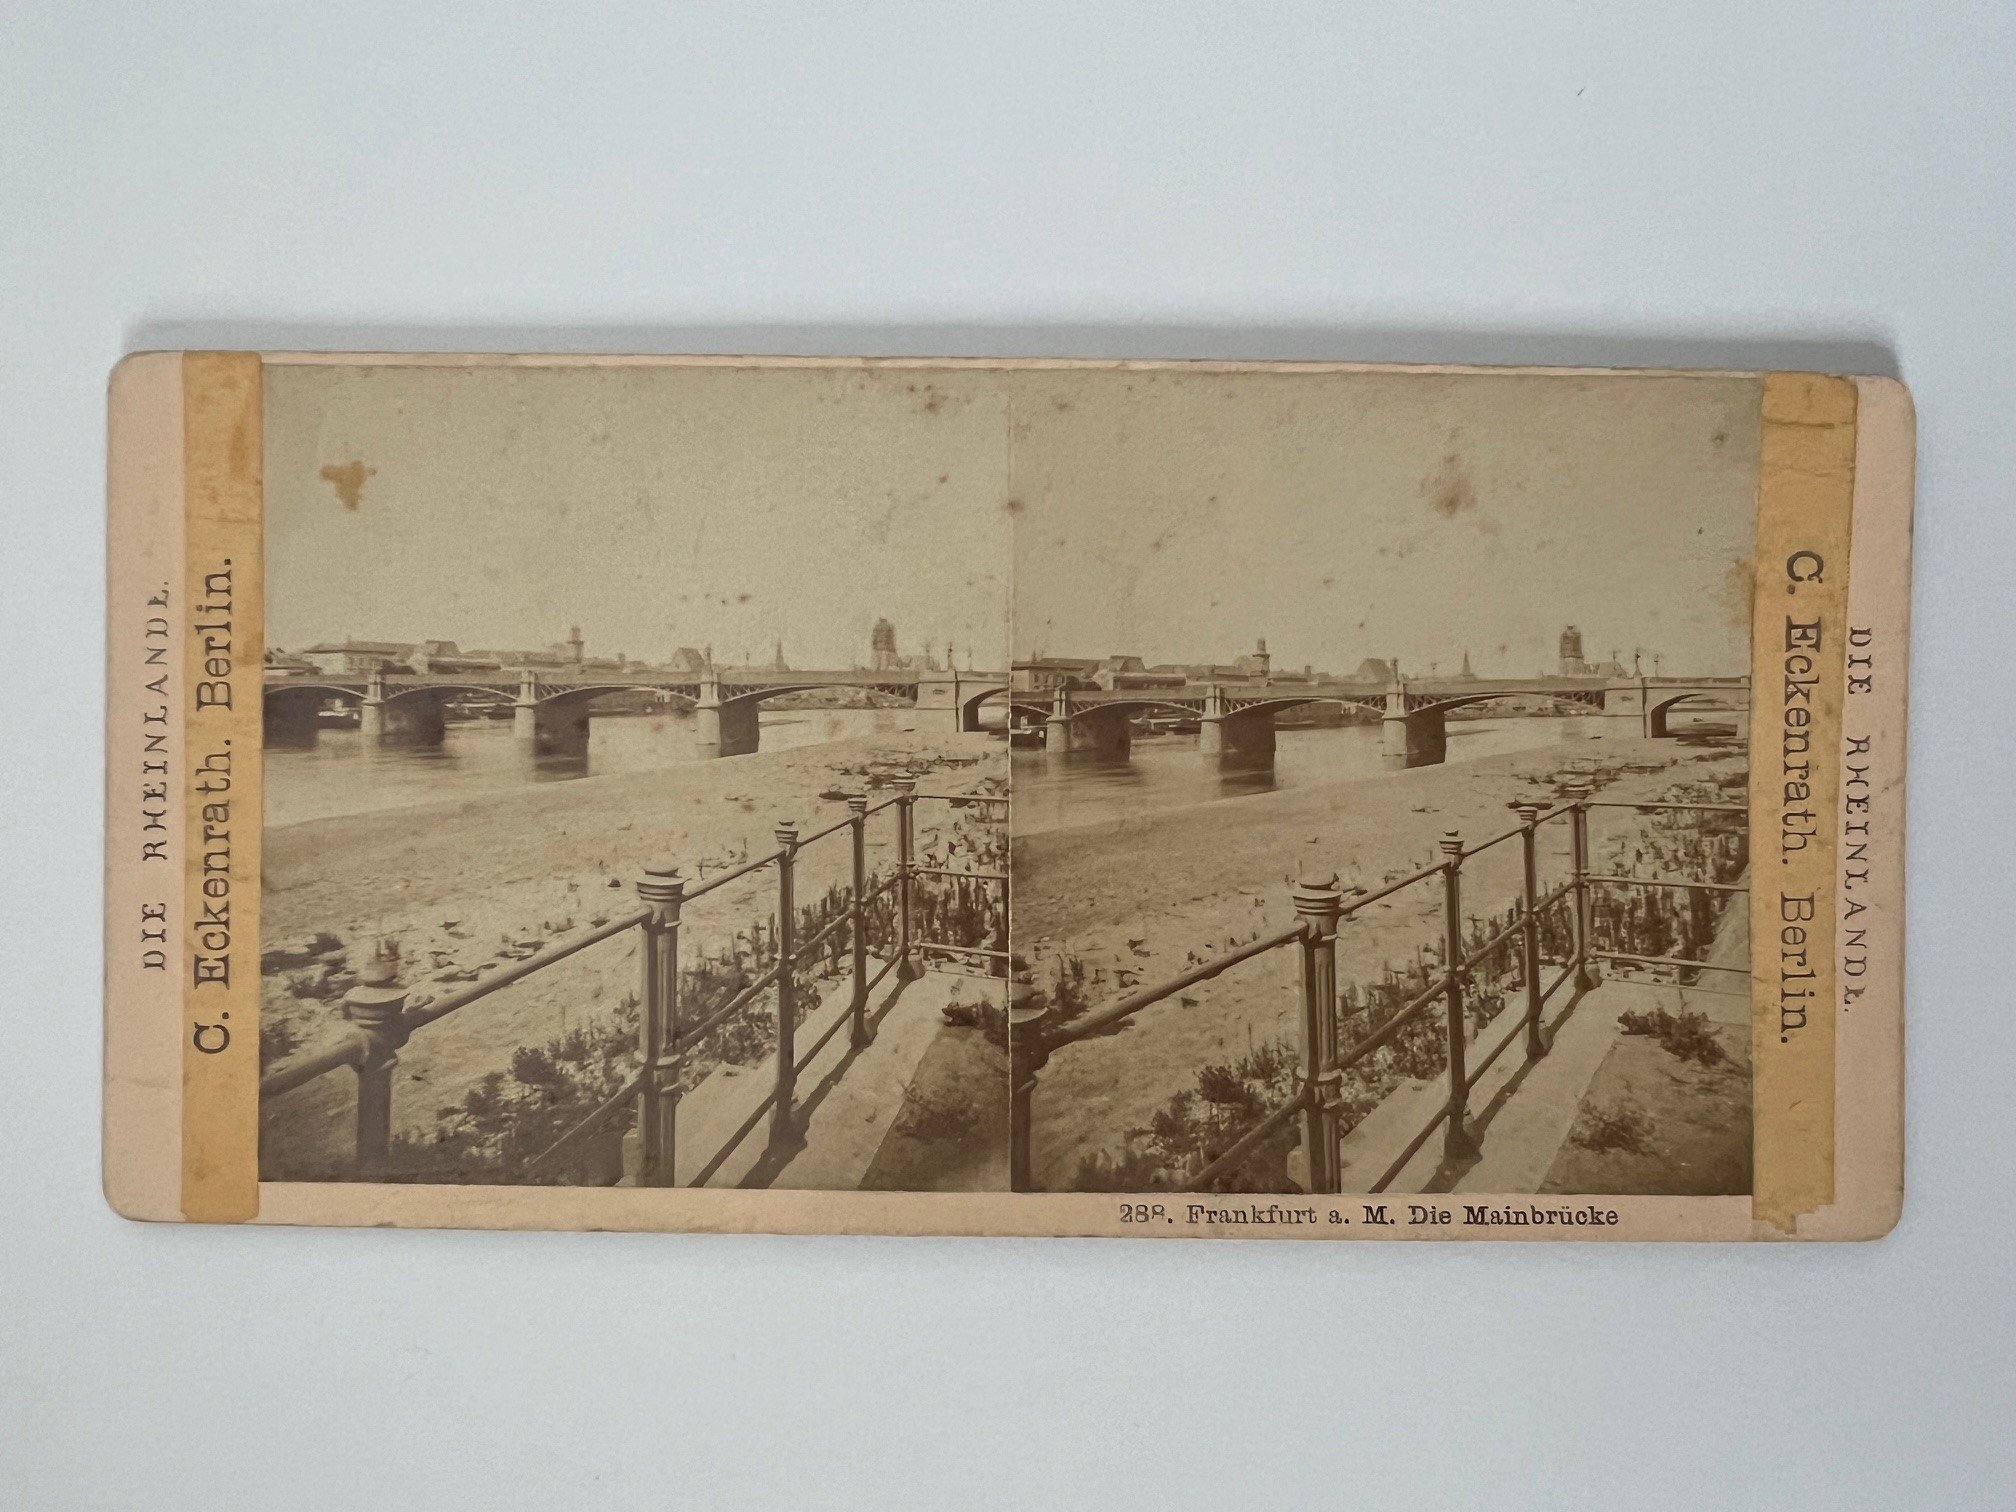 Stereobild, Johann Friedrich Stiehm, Frankfurt, Nr. 288, Die Mainbrücke, ca. 1880. (Taunus-Rhein-Main - Regionalgeschichtliche Sammlung Dr. Stefan Naas CC BY-NC-SA)